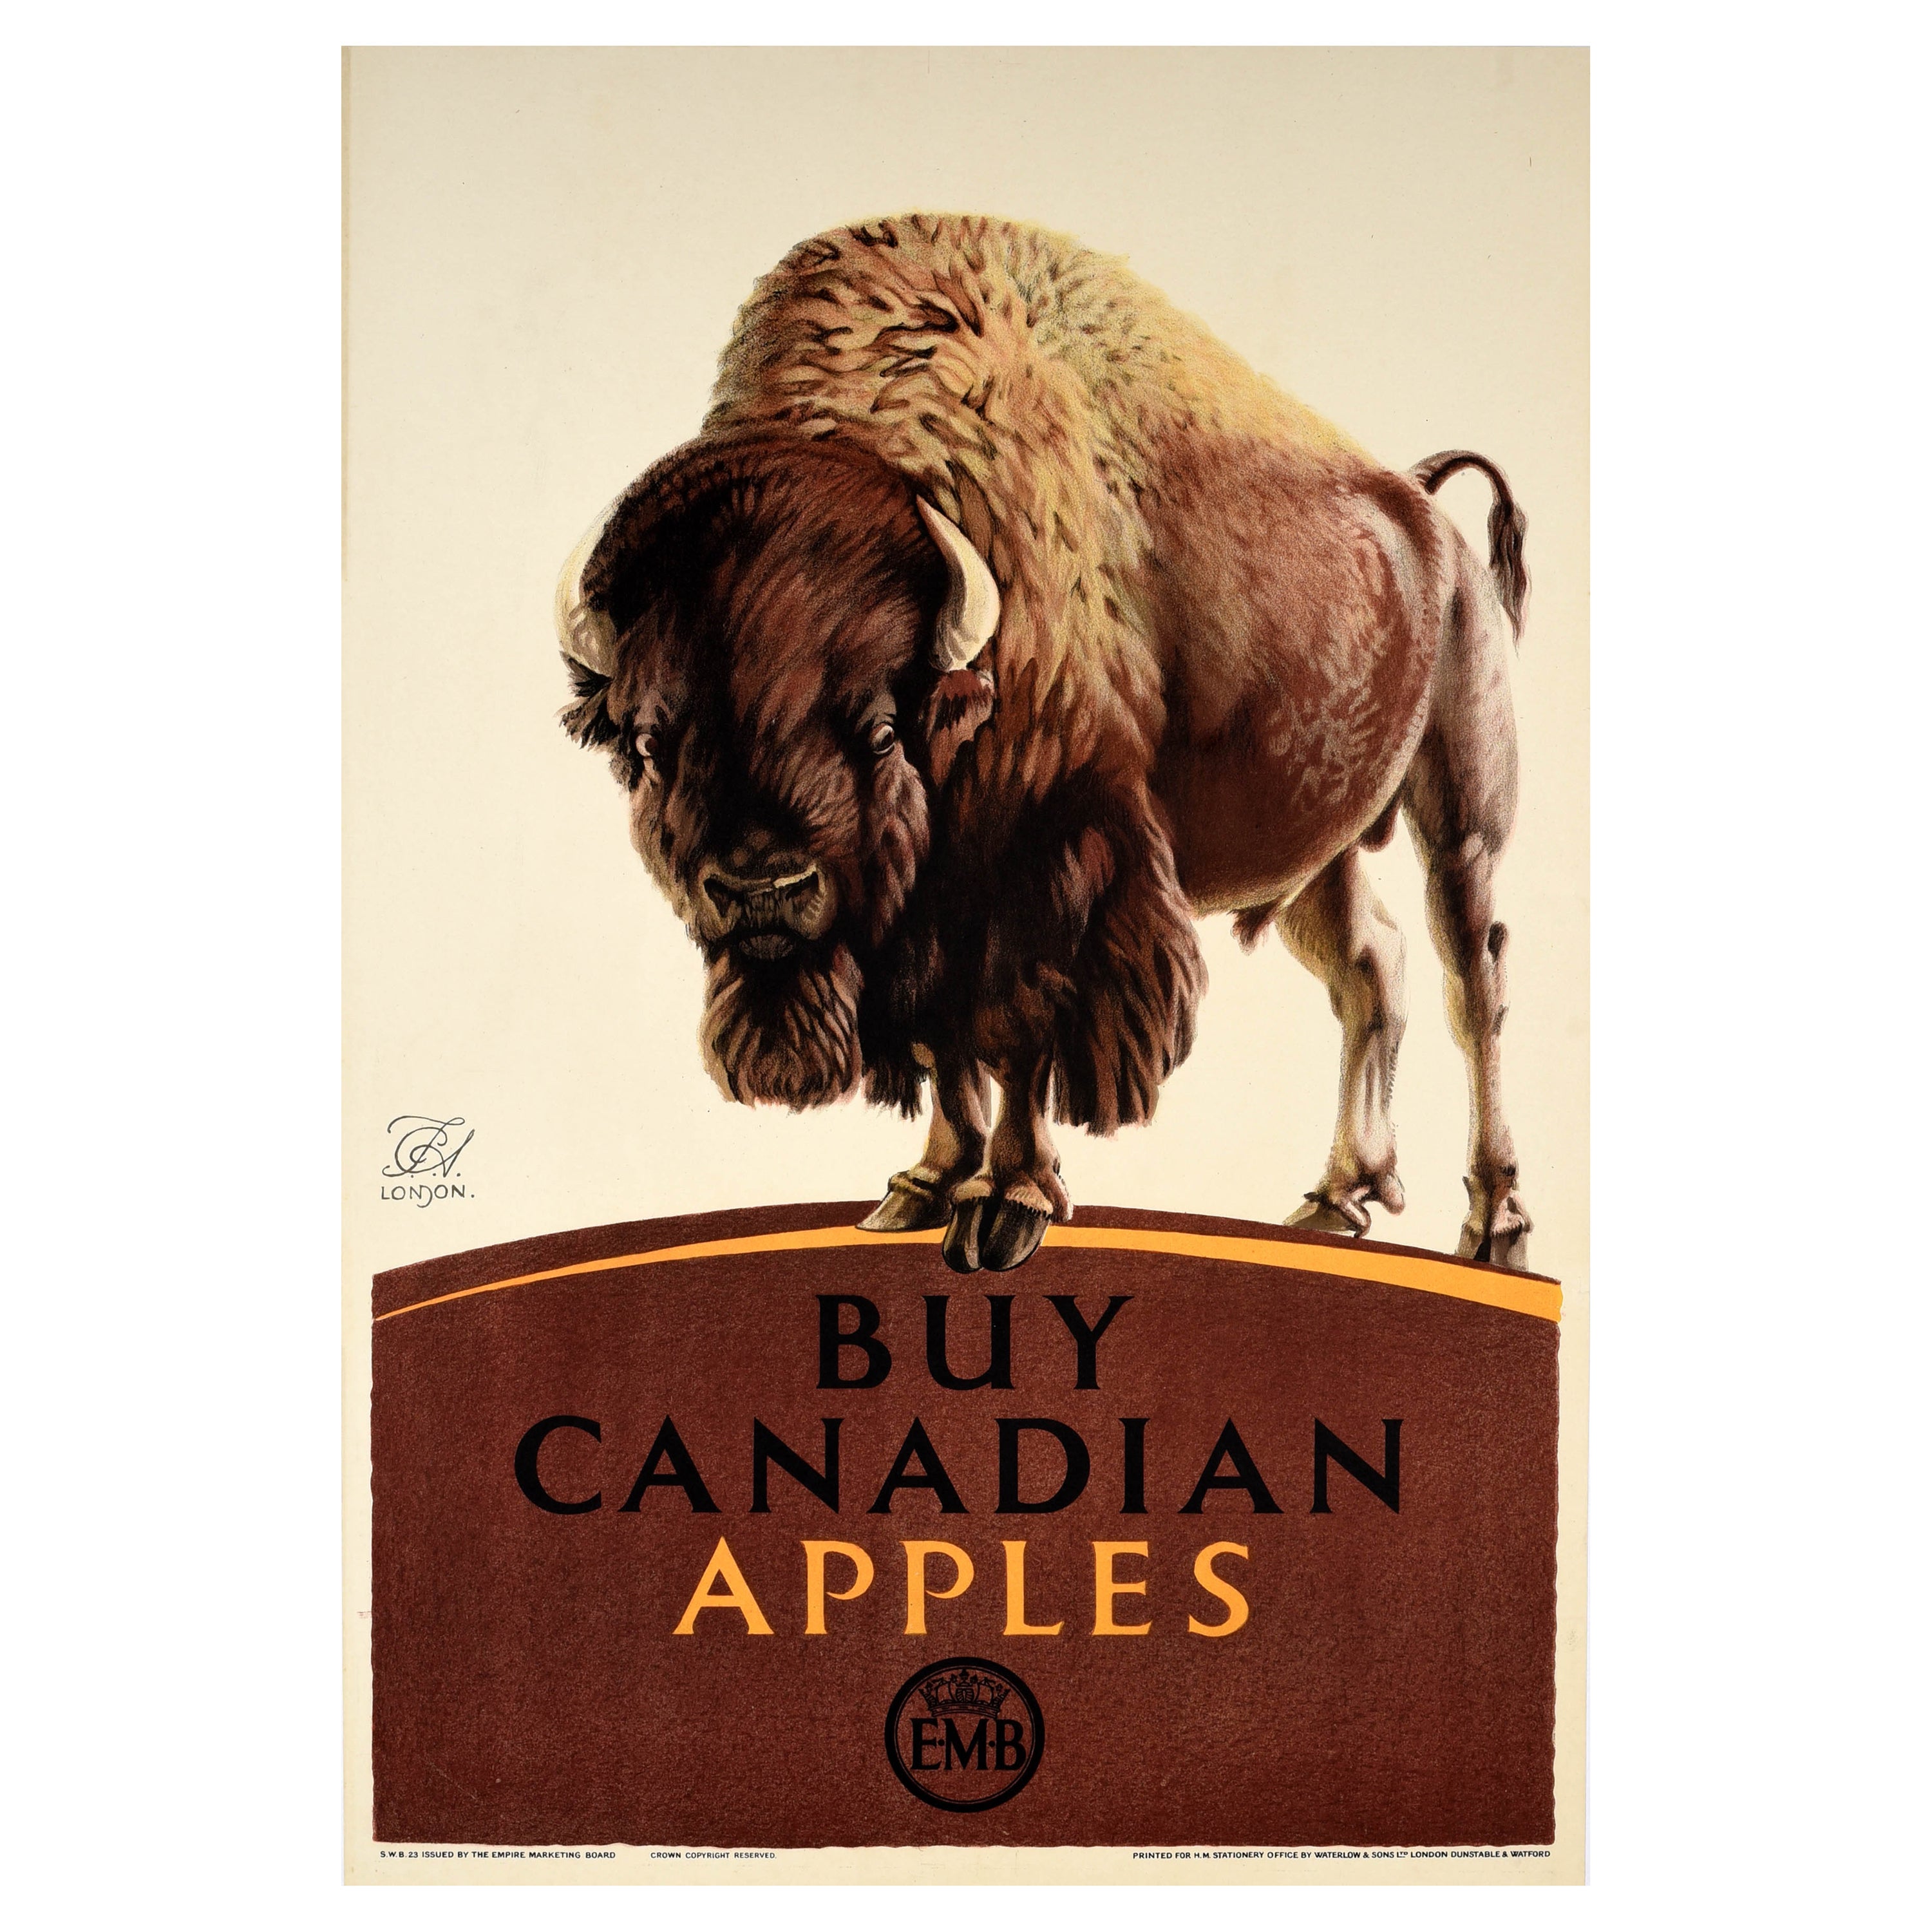 Original Vintage-Poster, EMB Buy Canadian Apples, Empire, Marketing Board, Bison, UK